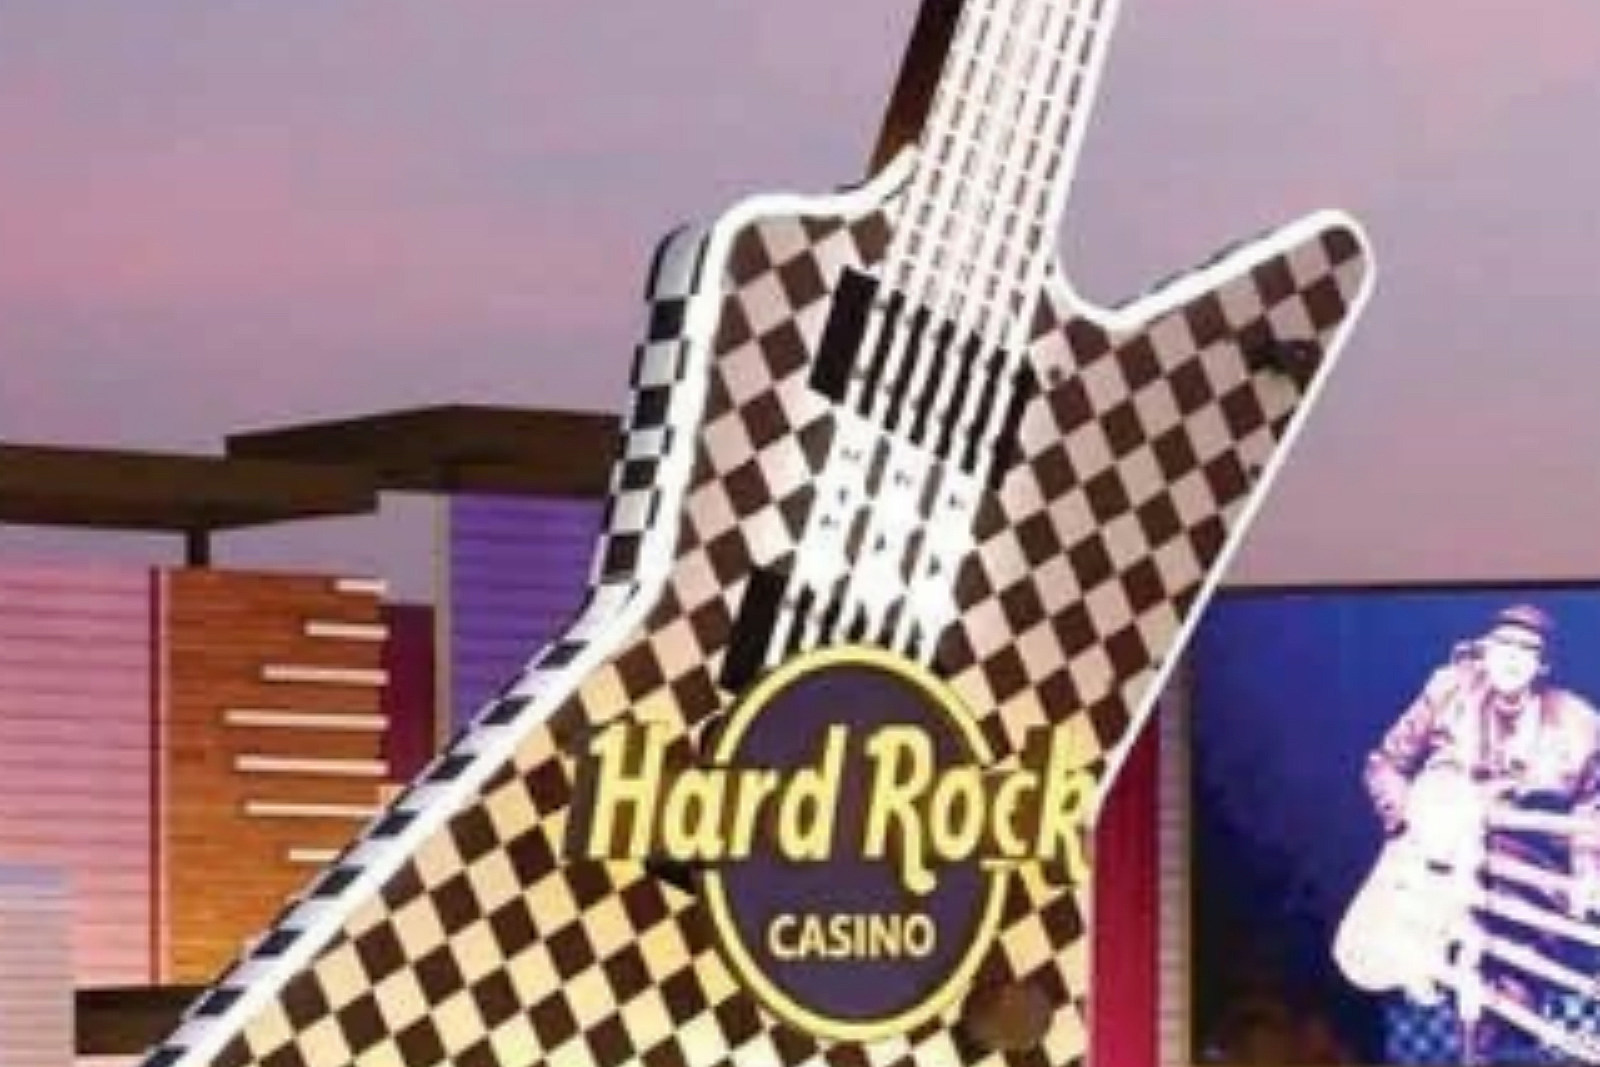 hard rock casino rockford job fair